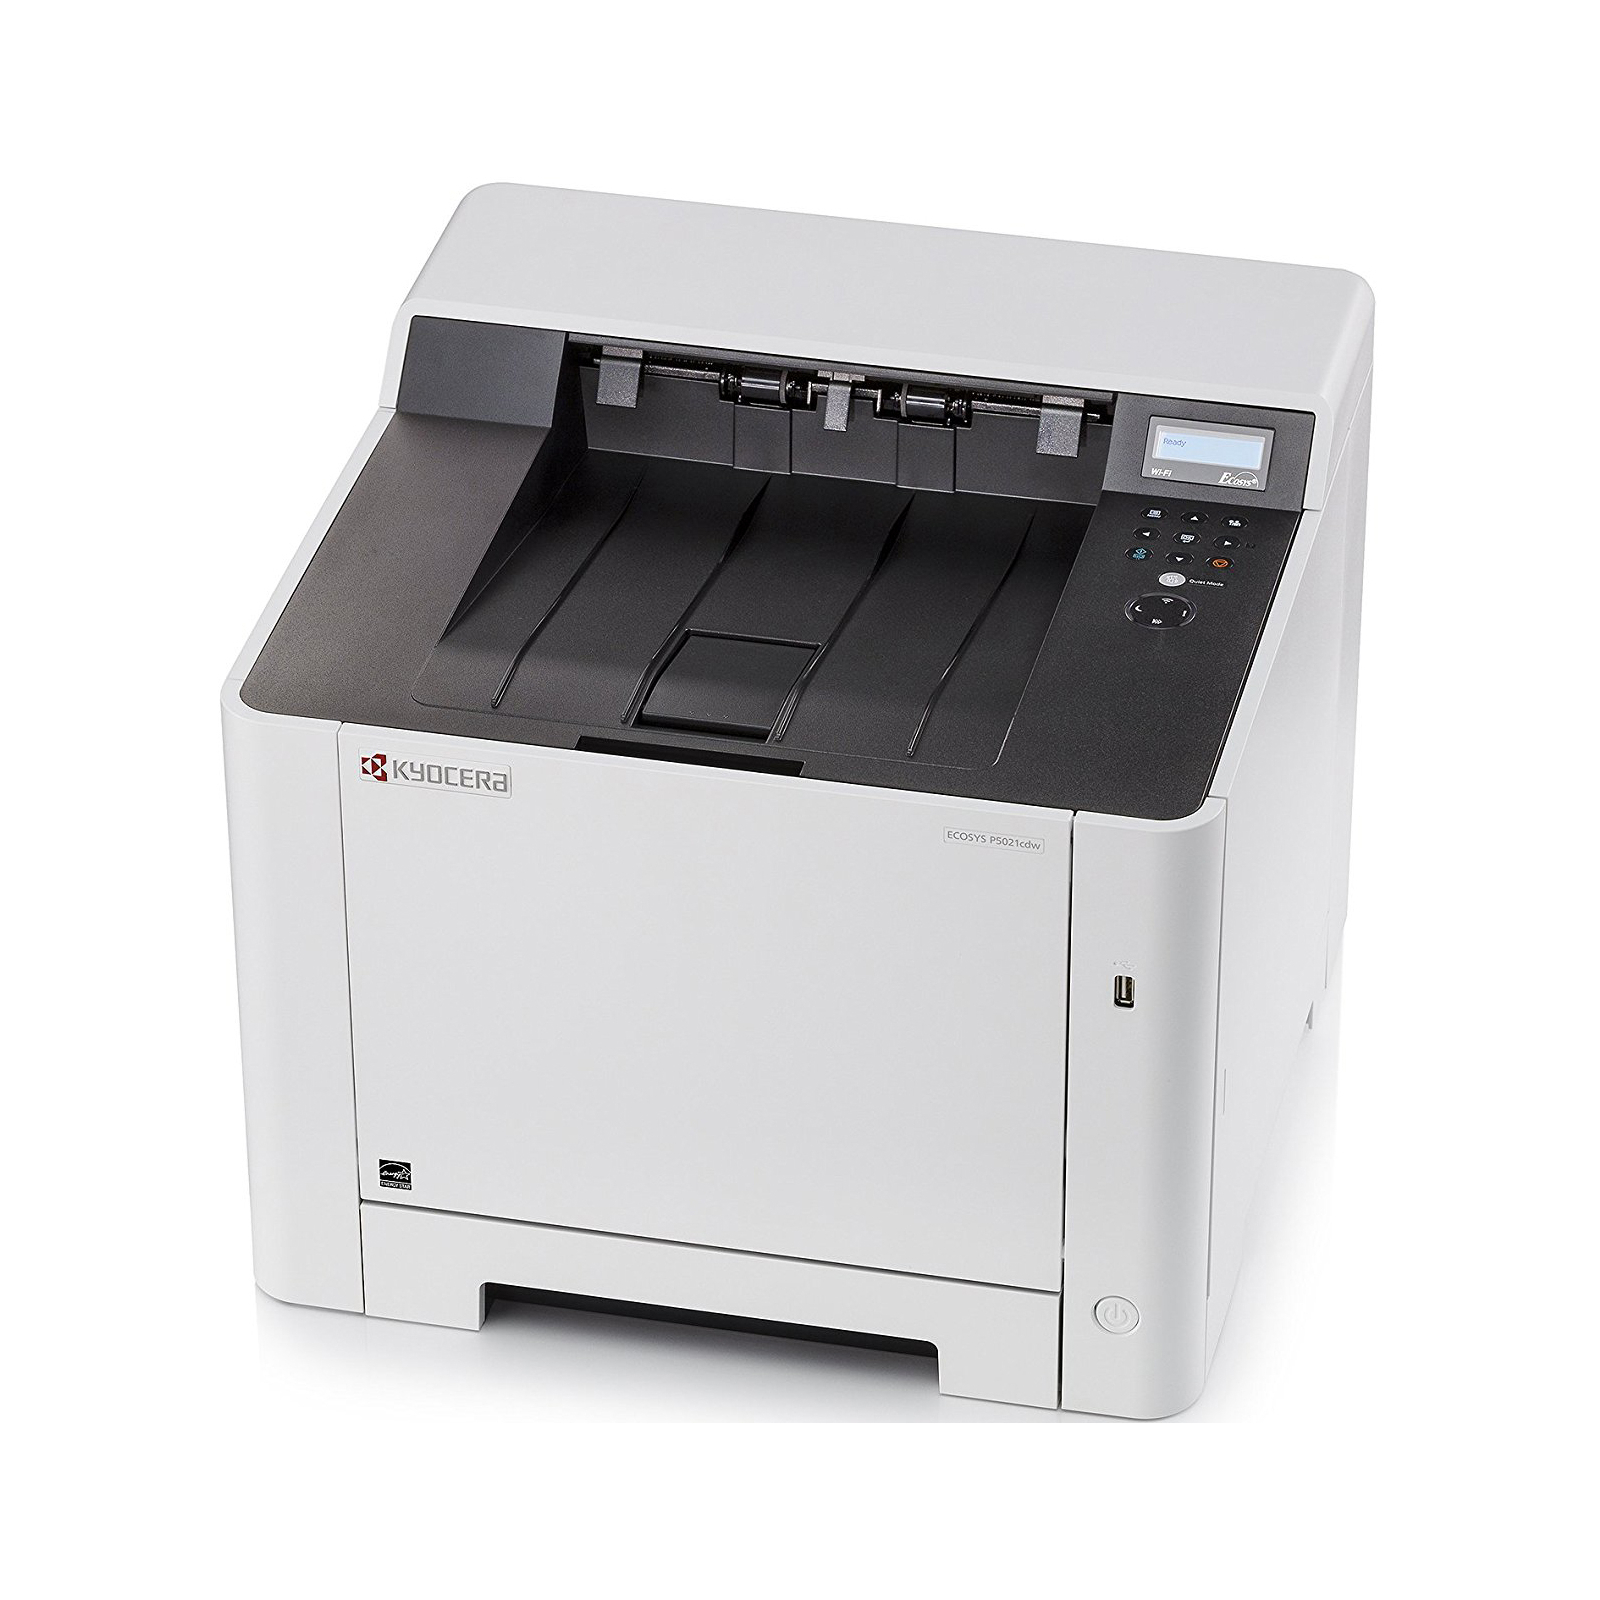 Лазерный принтер Kyocera Ecosys P5021CDN (1102RF3NL0) изображение 4